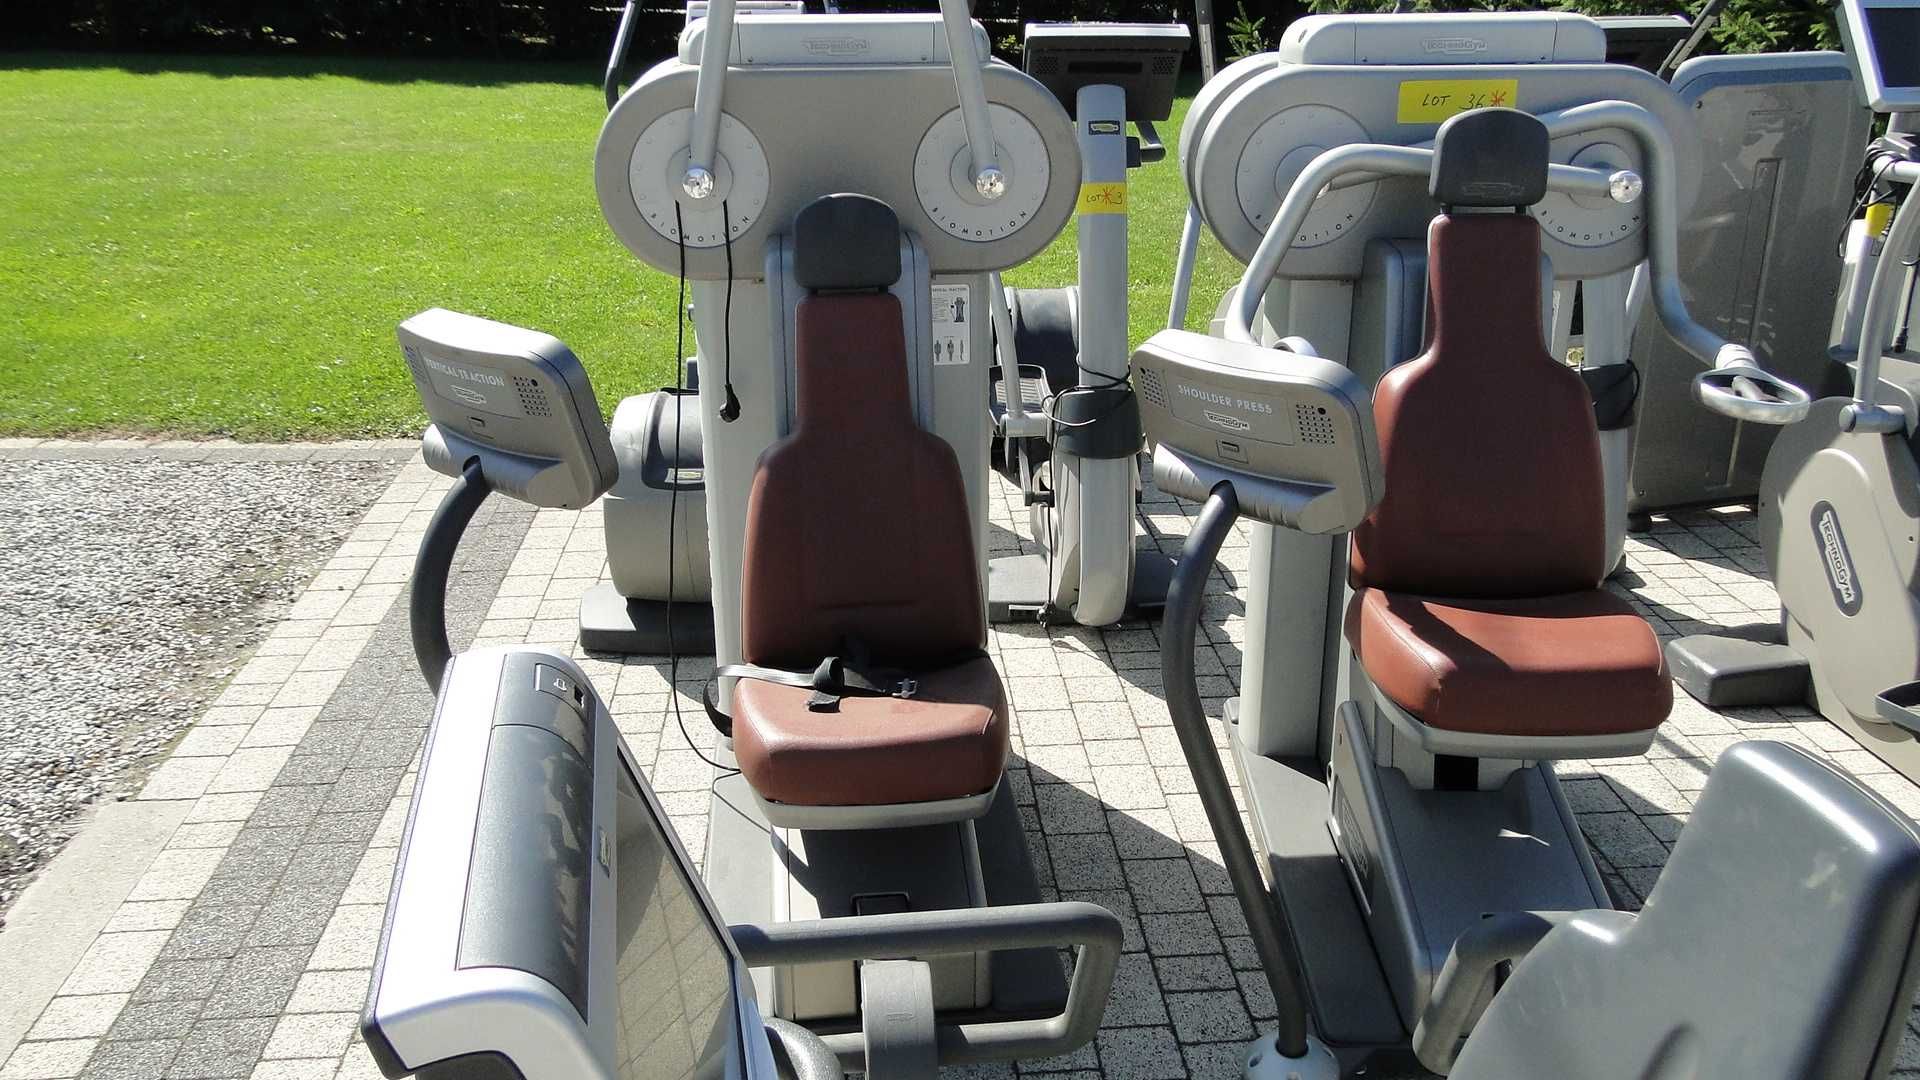 TECHNOGYM  Selection wyposażenie zestaw maszyn siłownia fitness 19szt